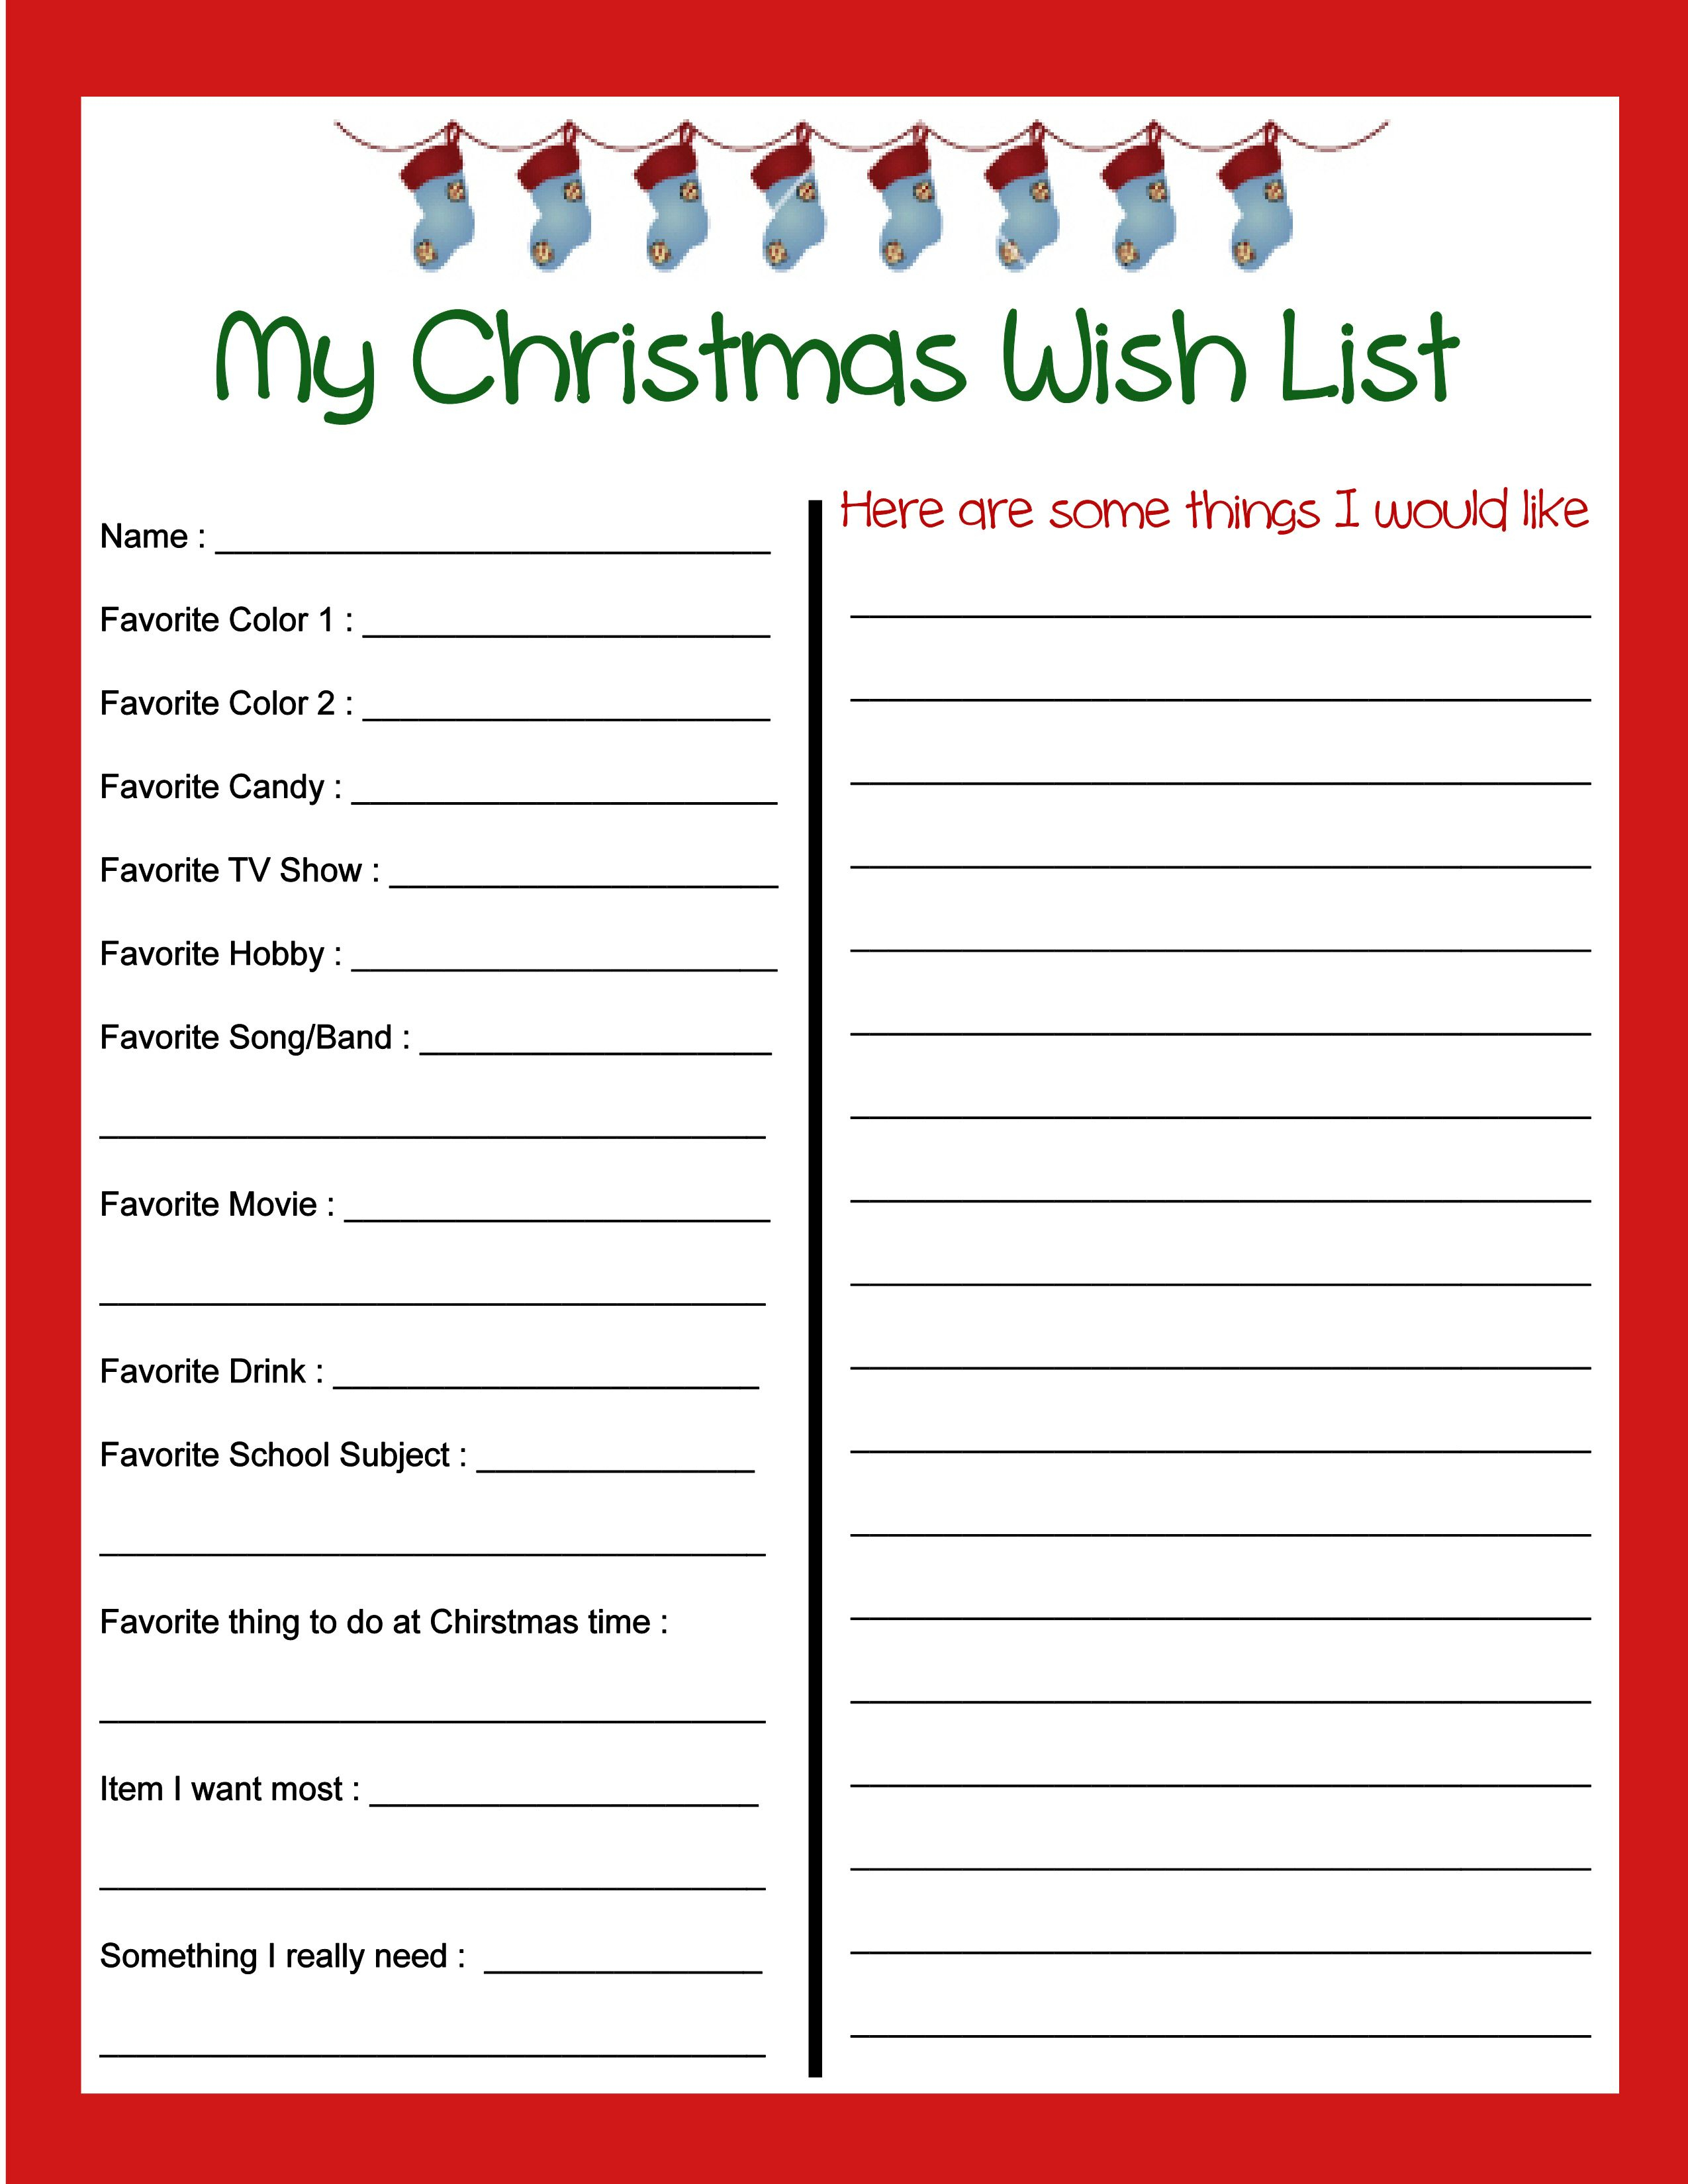 Pinbecky Stout On Christmas!!! | Pinterest | Christmas - Free Printable Christmas Wish List